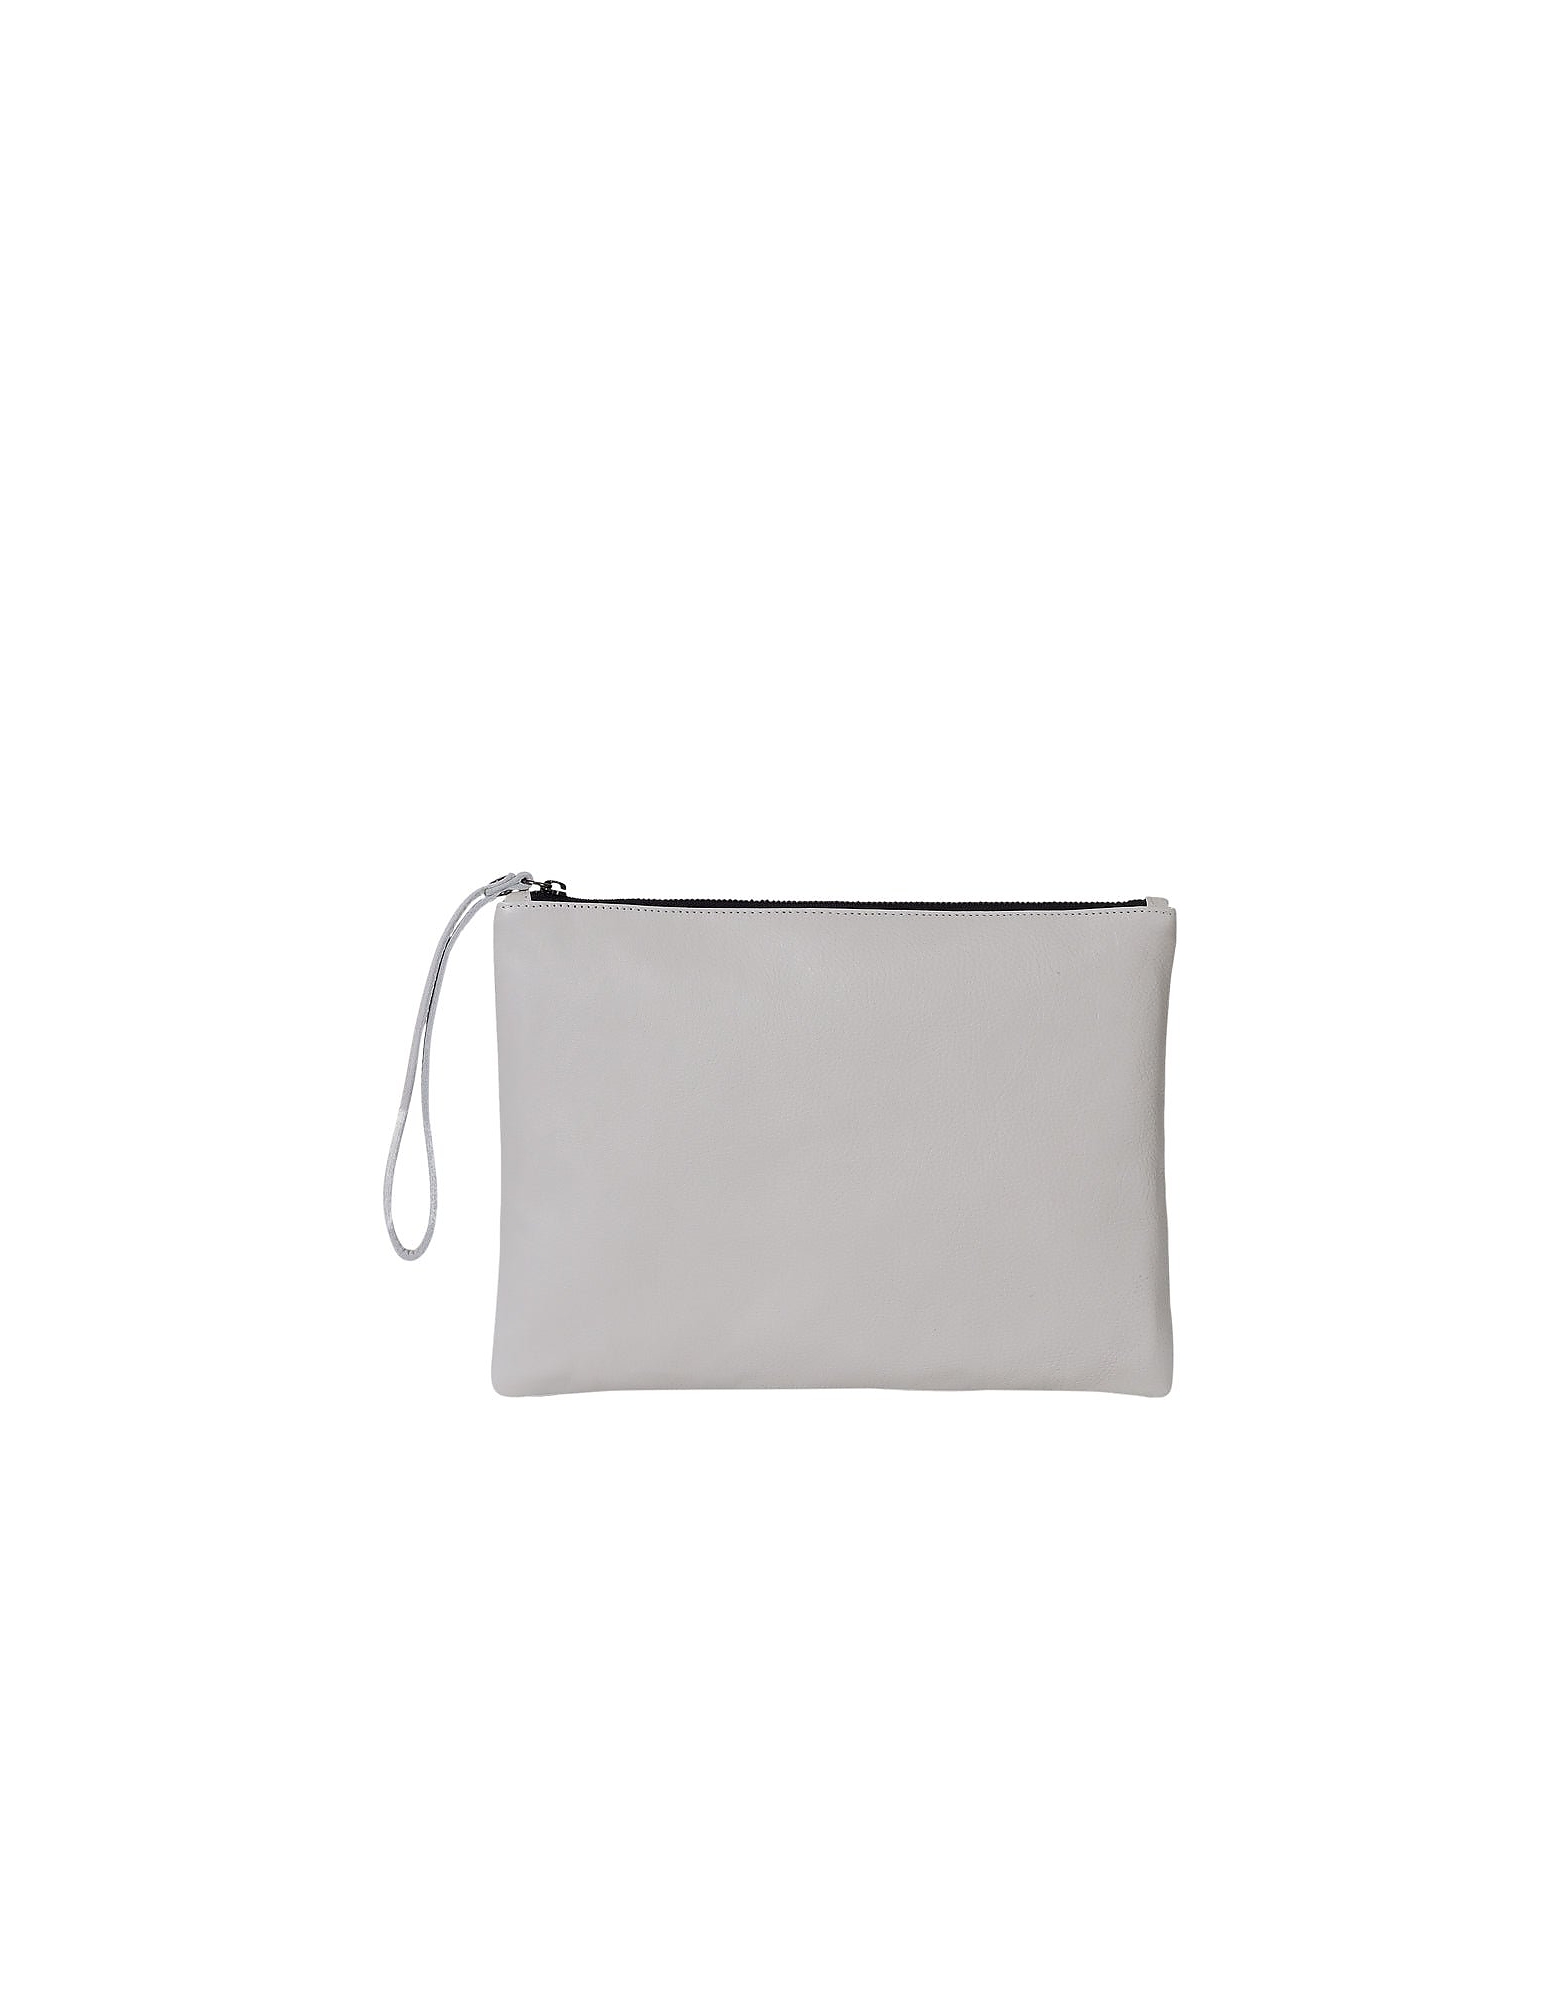 Brussosa Designer Handbags Pochette Xl - Clutch Bag In Blanc